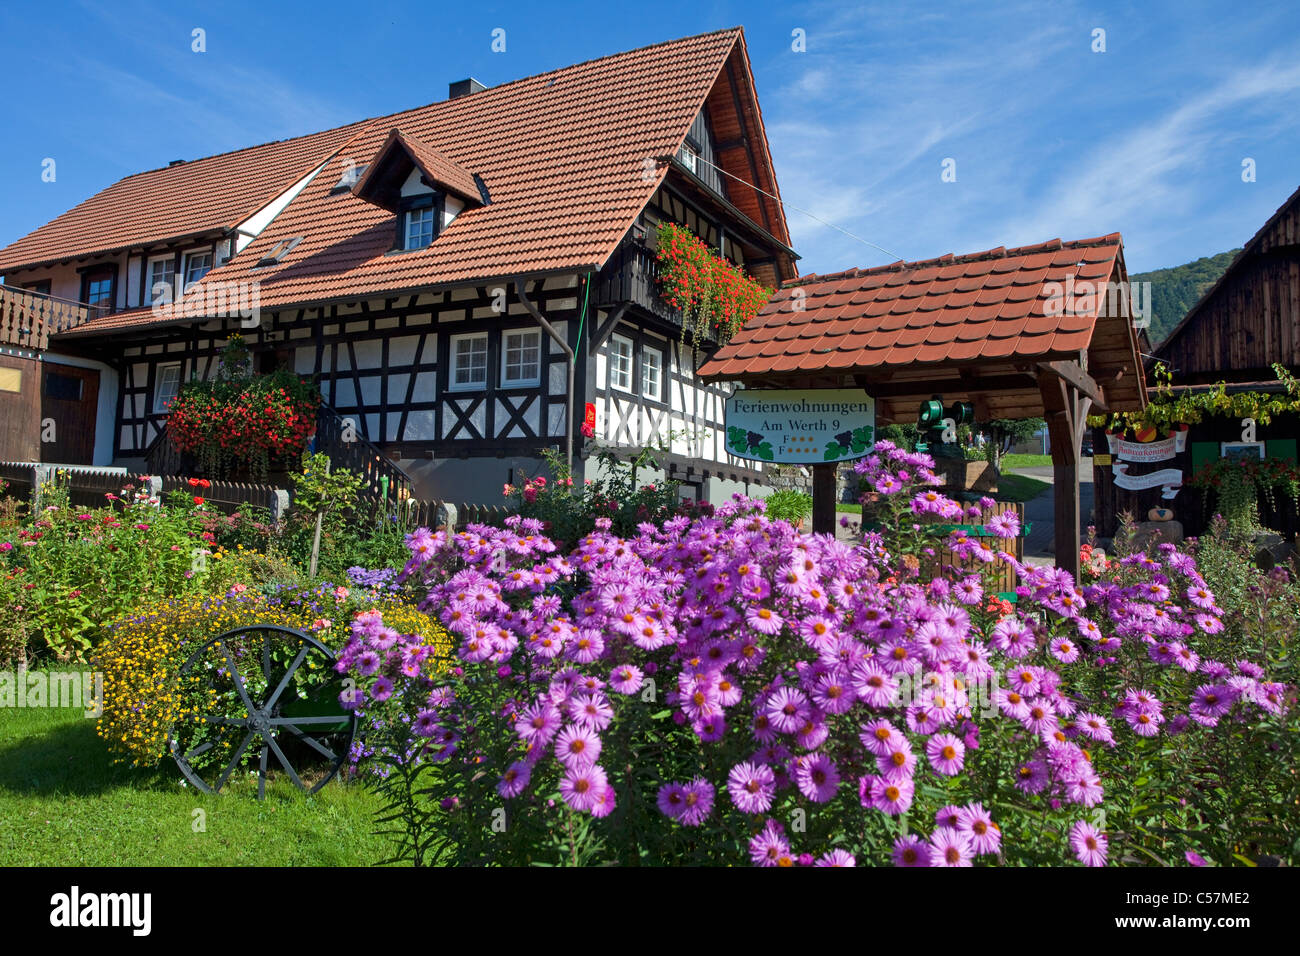 Bauernhaus und Bauerngarten, Blumengarten  in Sasbachwalden, farmer house and flower garden Stock Photo